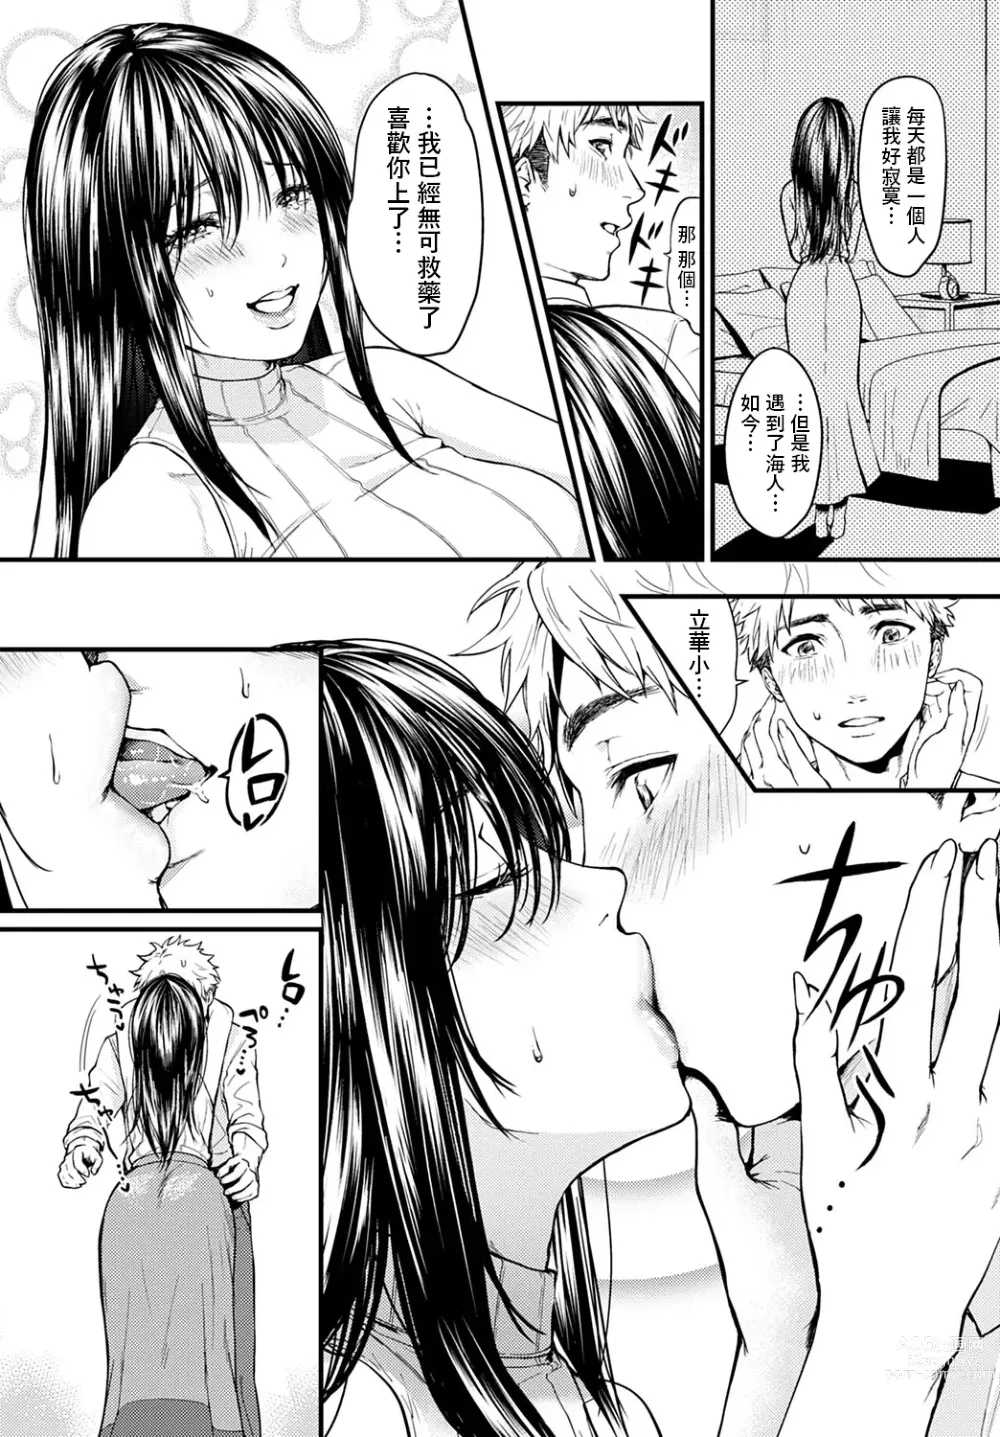 Page 7 of manga Tonari no Heya no Anata